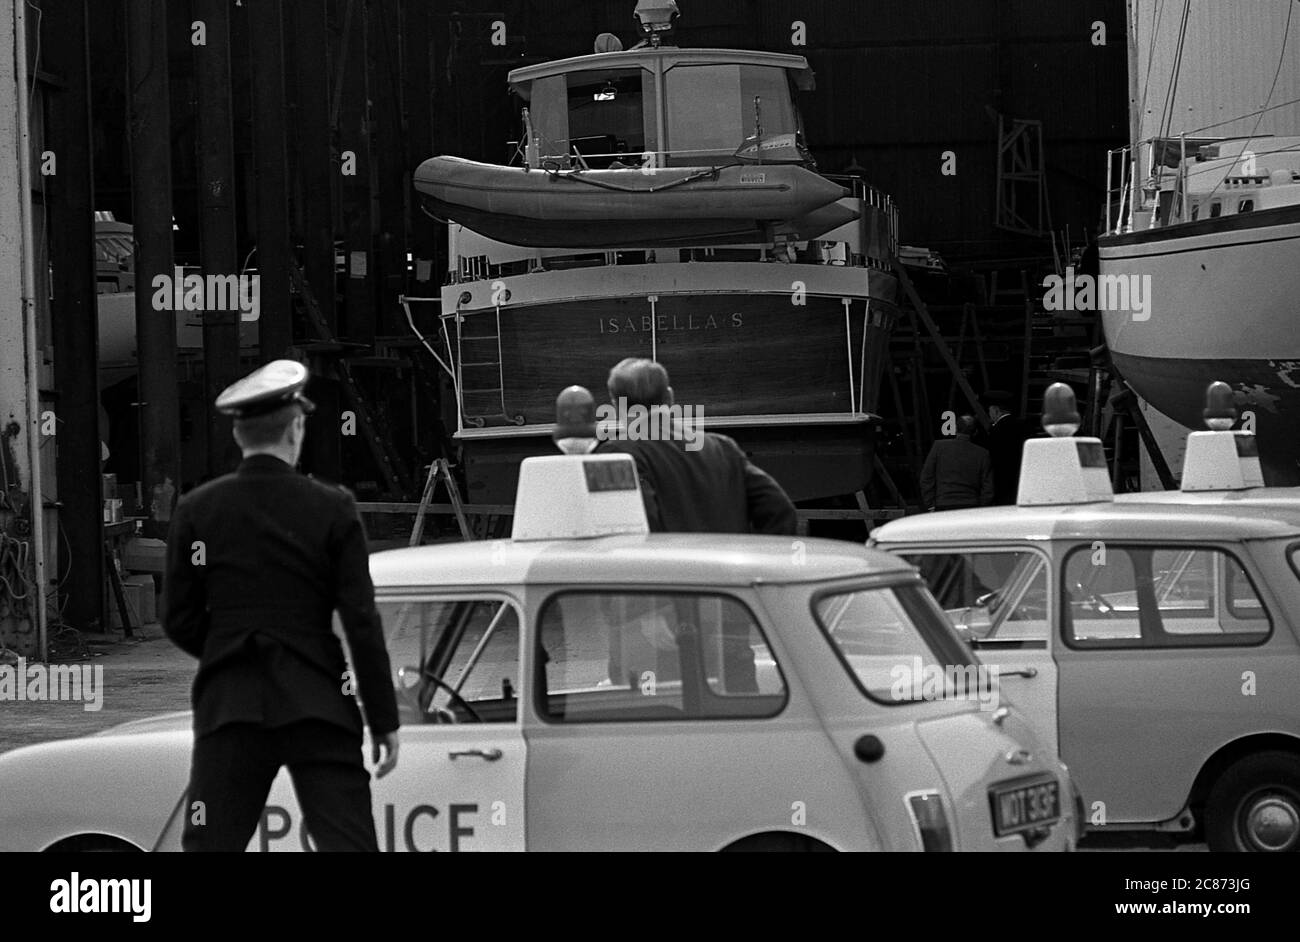 AJAXNETPHOTO. 27 AVRIL 1970. GOSPORT, ANGLETERRE. - CANULAR À LA BOMBE LORS DE LA VISITE DE LA PRINCESSE - RECHERCHE DE POLICE CAMPING CAMPING-CAR & NICHOLSON ET HANGARS À LA SUITE DE L'ALARME D'UNE BOMBE PLANTÉE LORS DE LA VISITE DE LA PRINCESSE ALEXANDRA DE HRH, L'HONORABLE LADY OGILVY, QUI ÉTAIT SUR PLACE POUR NOMMER LE YACHT LUTINE. L'ALARME S'EST AVÉRÉE ÊTRE UN CANULAR. PHOTO:JONATHAN EASTLAND/AJAXREF:357031 202206 15 Banque D'Images